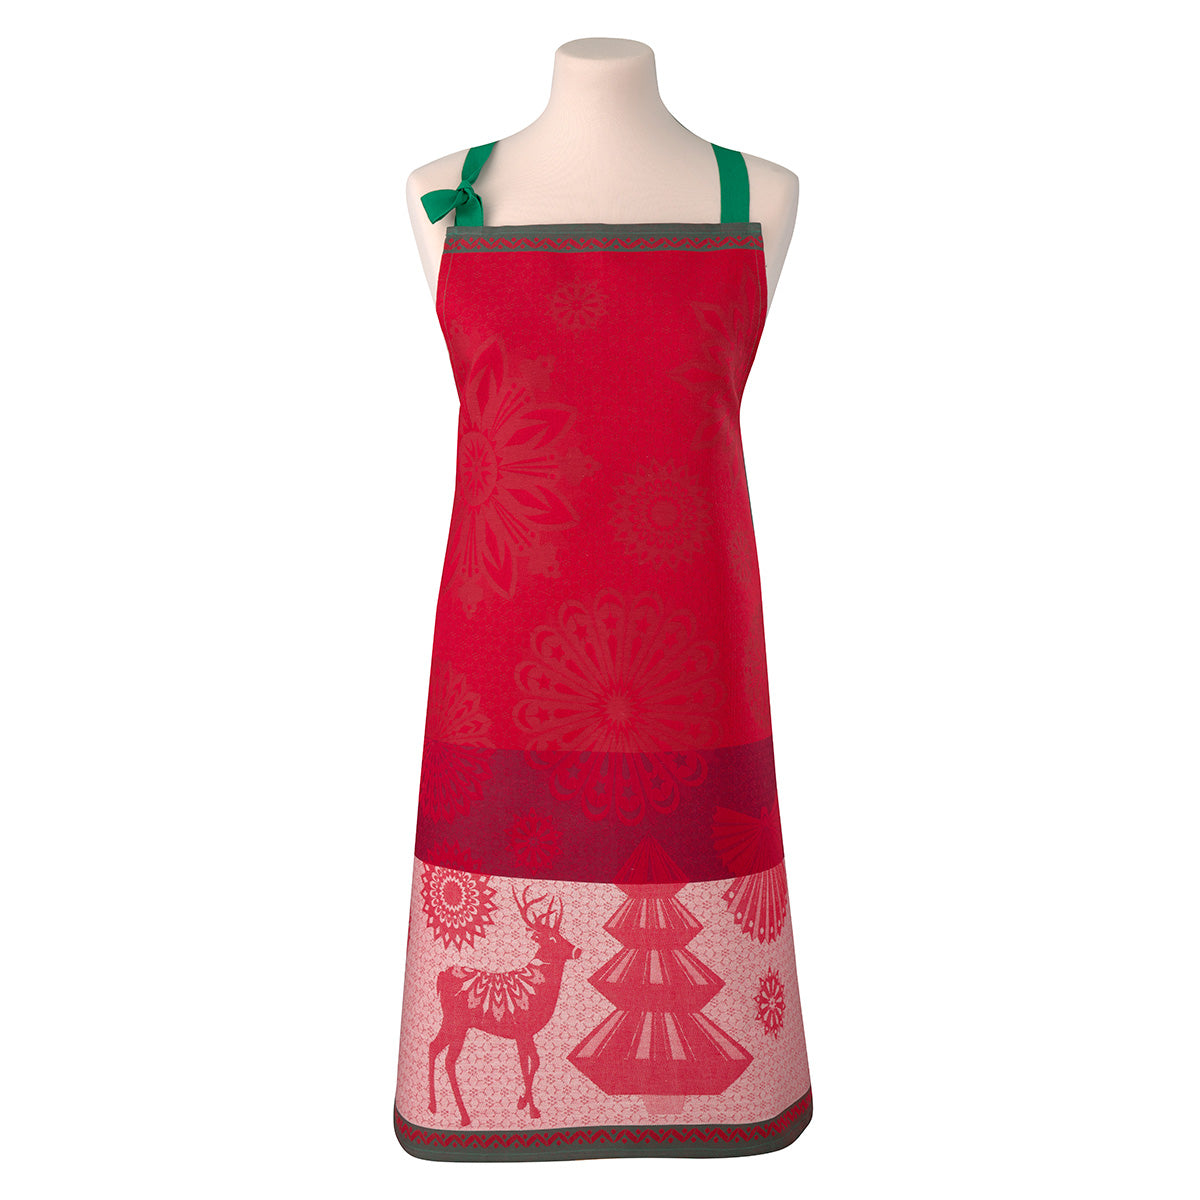 lumière d'étoiles red apron | Christmas Apron by Le Jacquard Francais at Fig Linens and Home